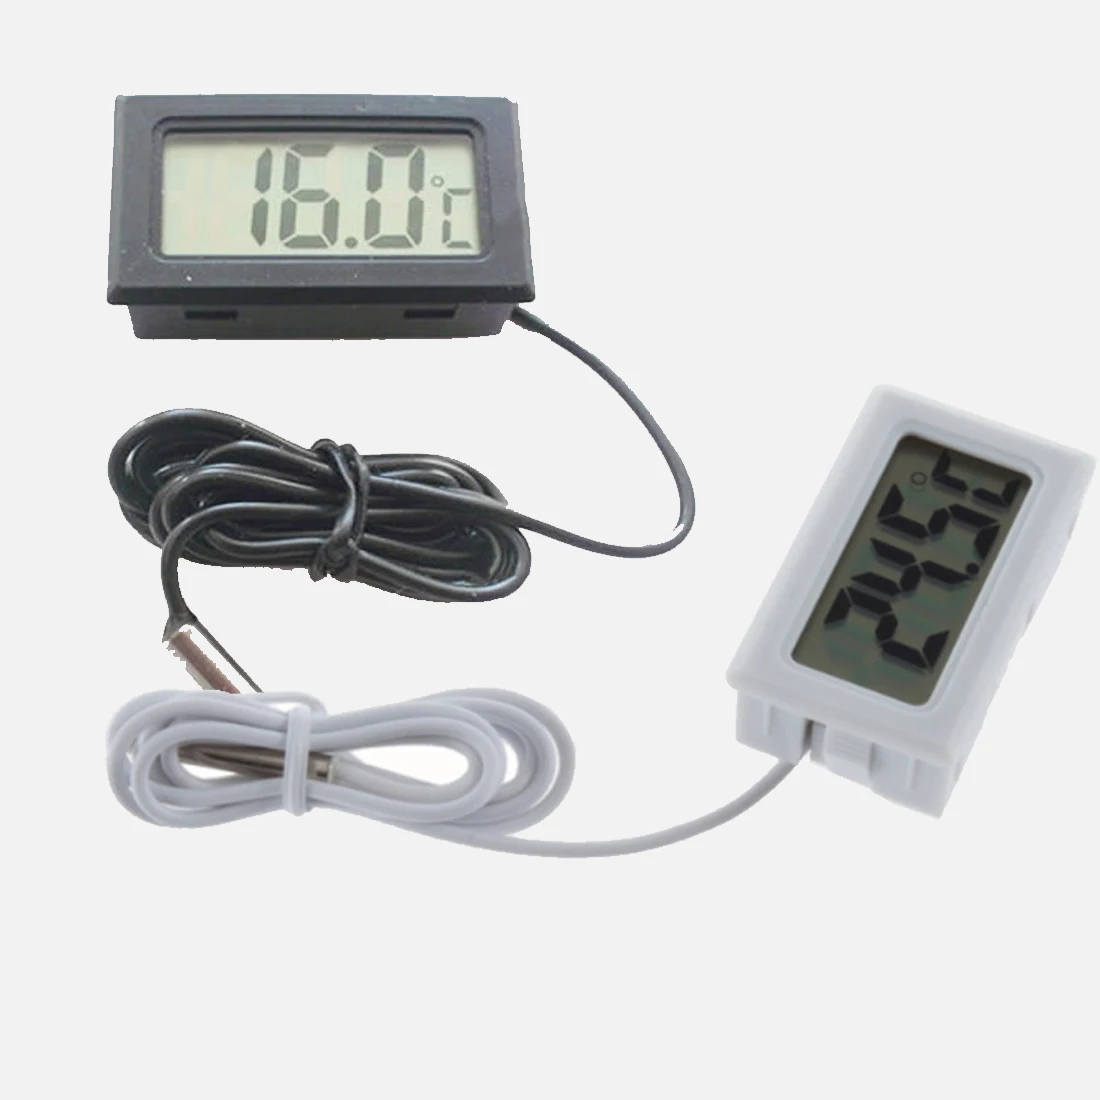 1 шт. Мини ЖК-дисплей инкрустация цифровой термометр датчик для холодильника/аквариума тестер температуры(-50C~ 110C) включает батареи